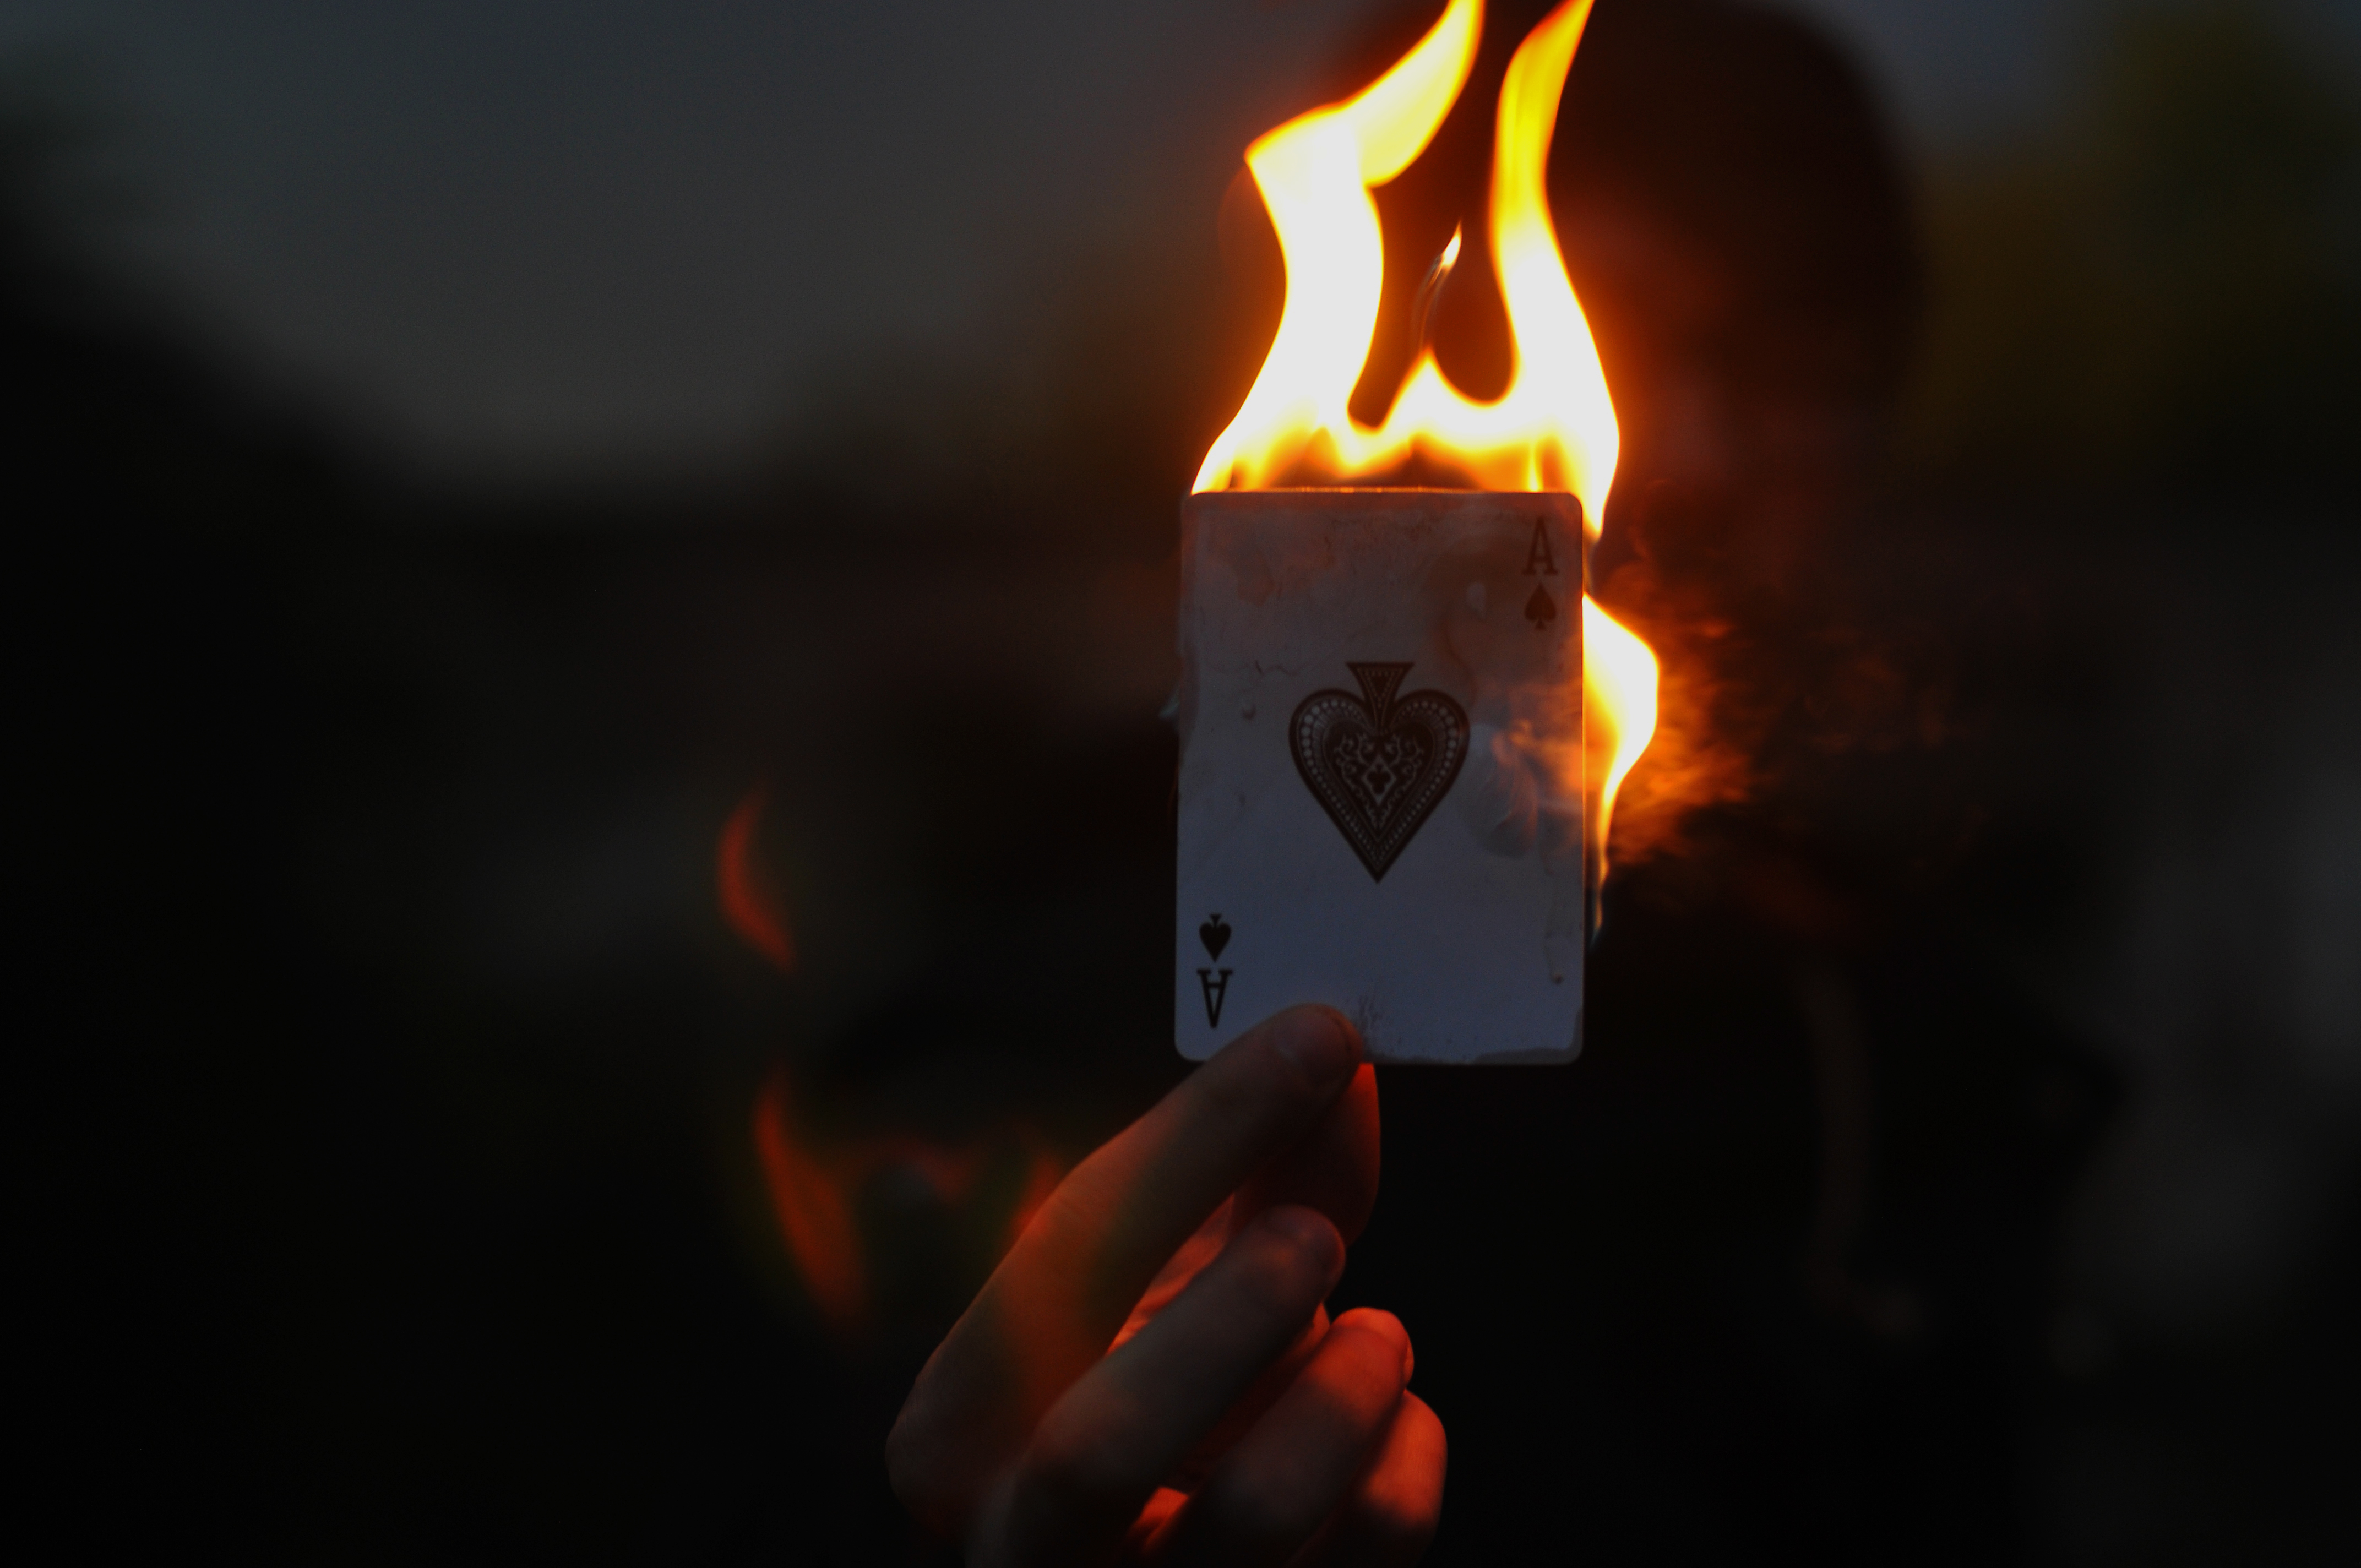 Включи 7 гореть. Горящие карты в руке. Обои с горящими картами. Горящая книга в руках. Фотосессия с горящей картой.